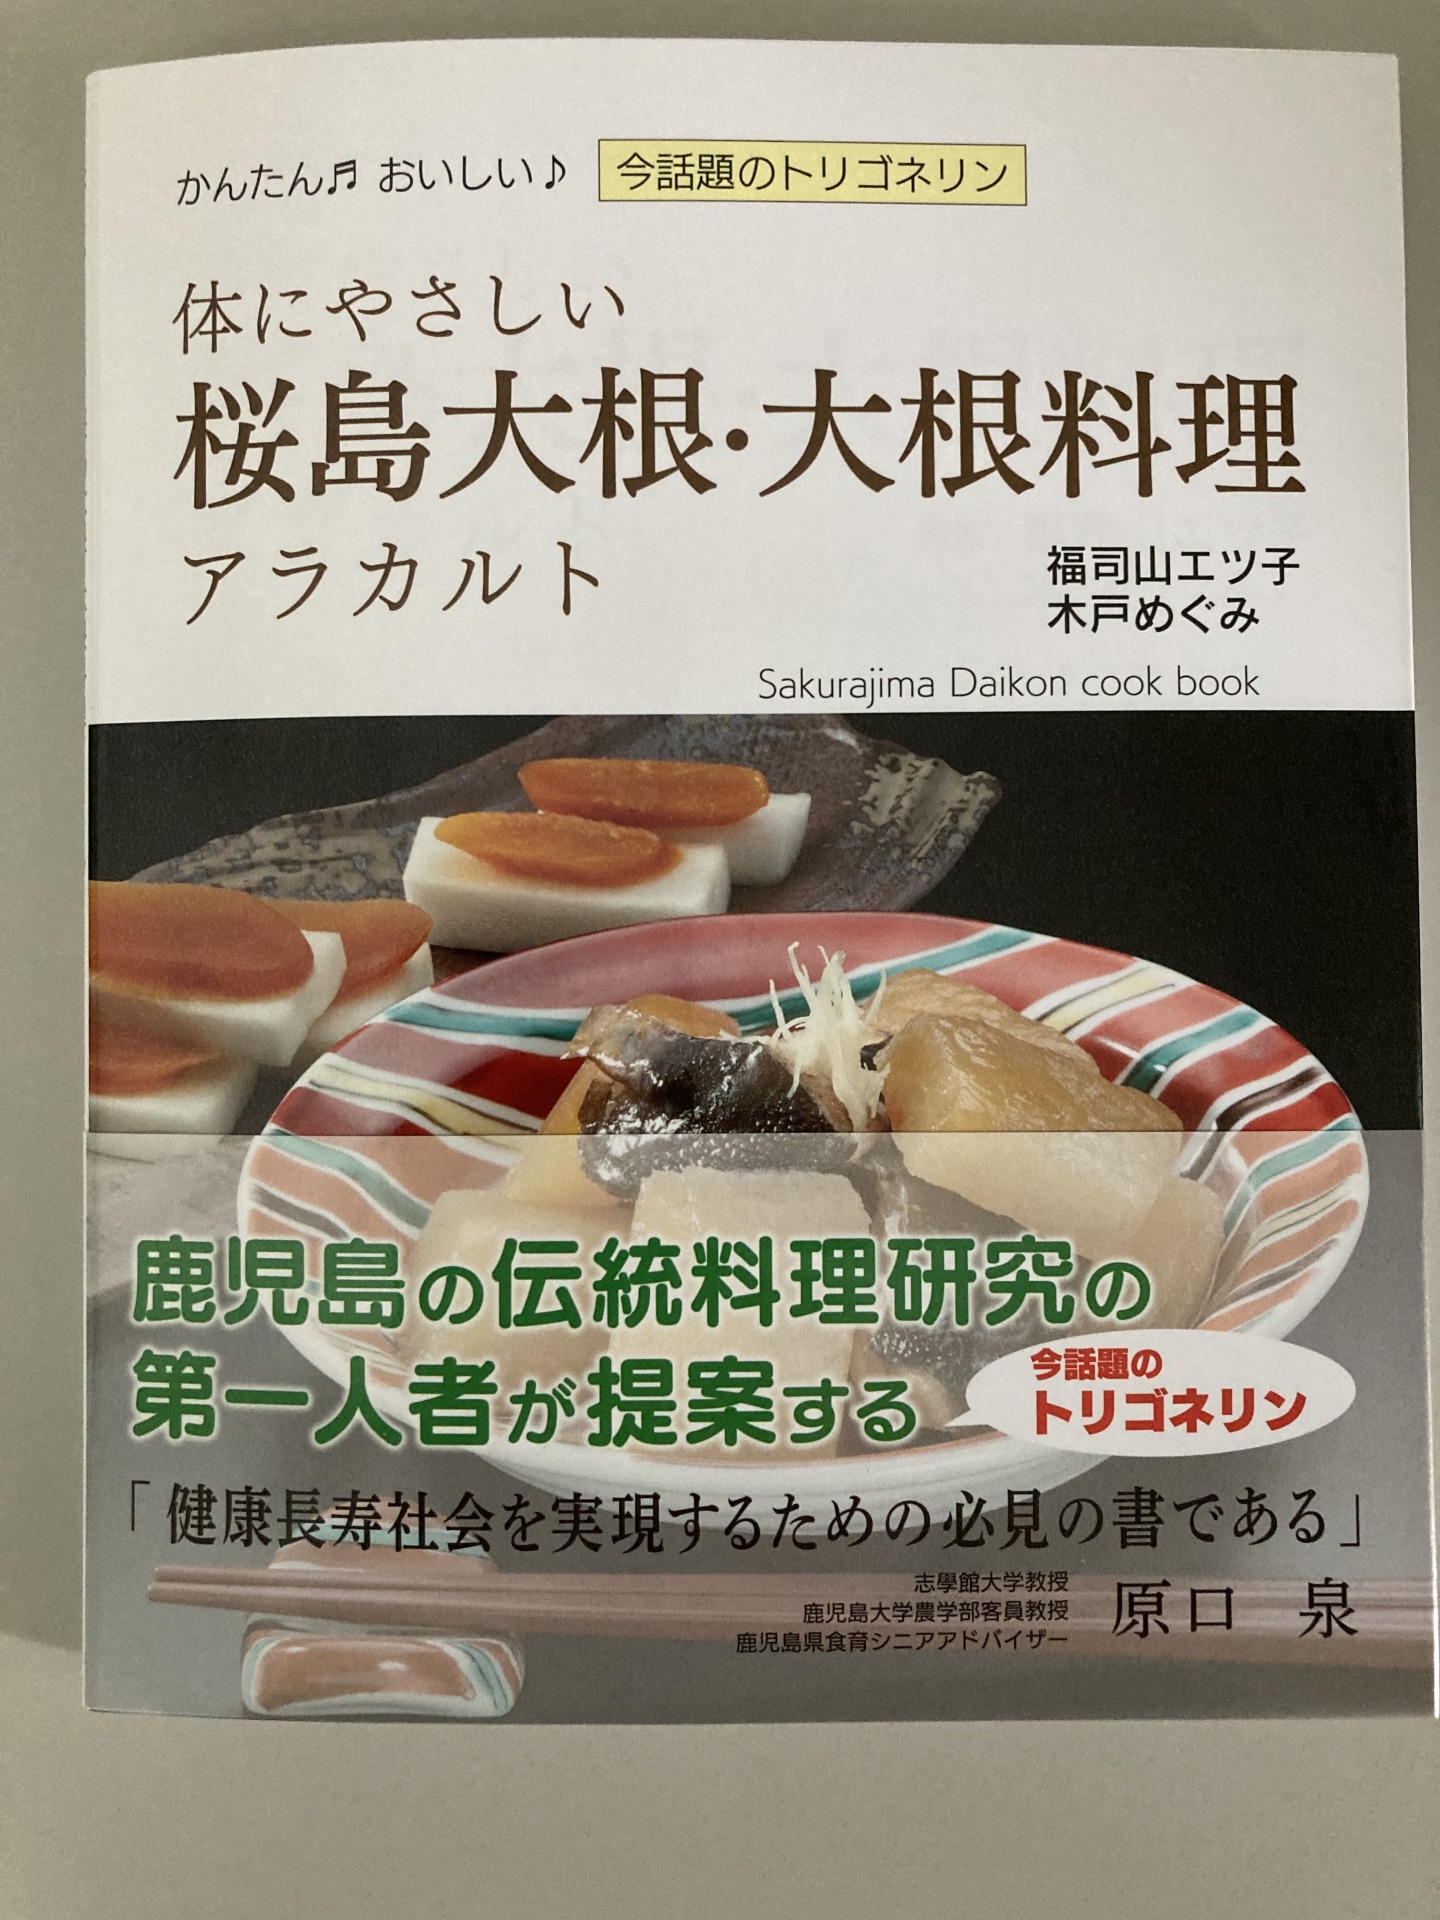 桜島大根 栄養管理 栄養計算ソフト トータル ソフトウェア